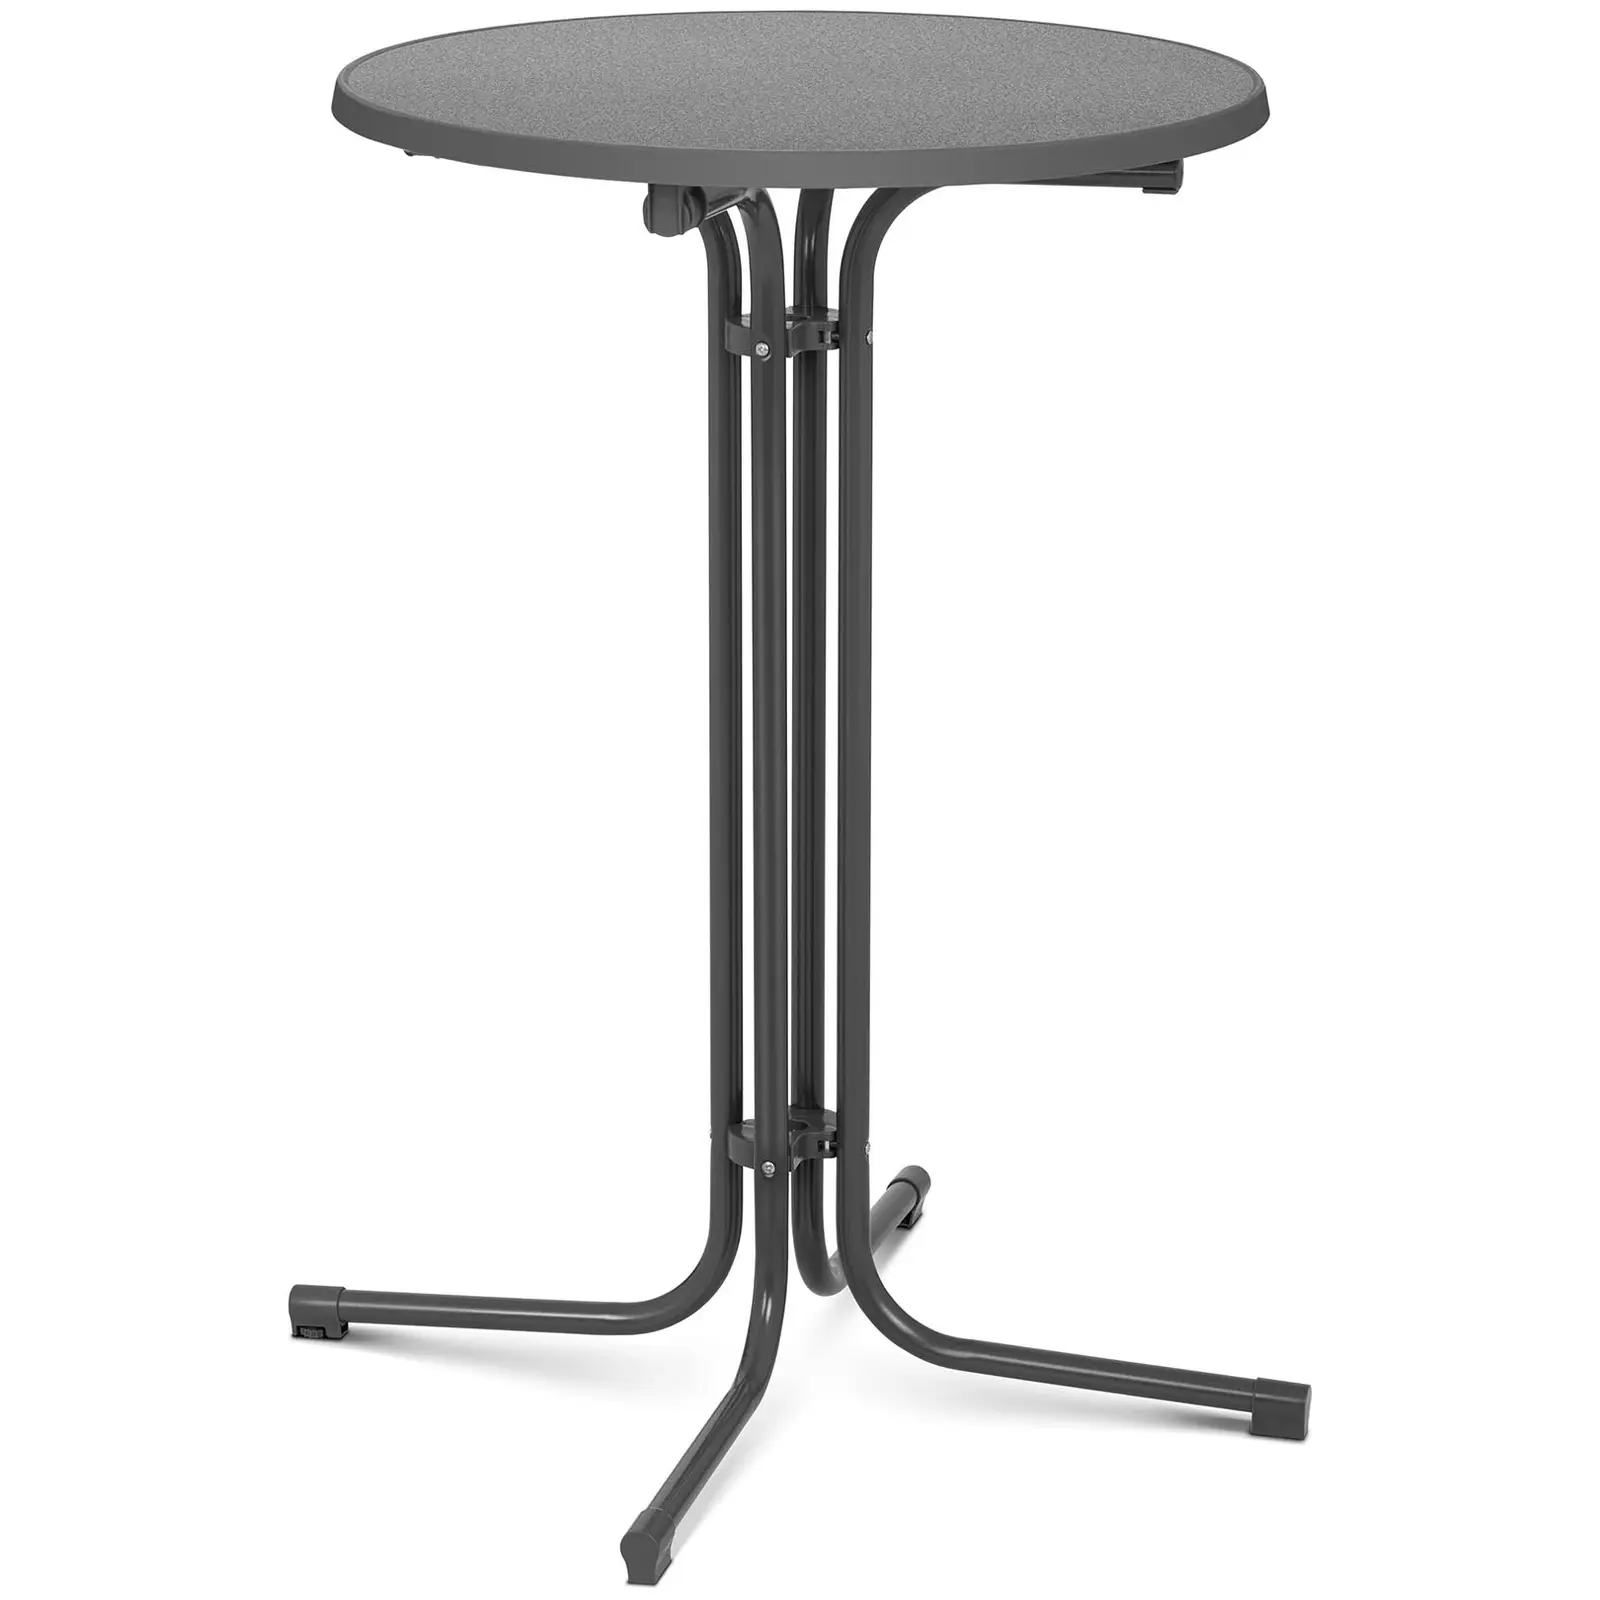 Koktejlový stůl Ø 70 cm skládací šedý - Skládací stoly Royal Catering